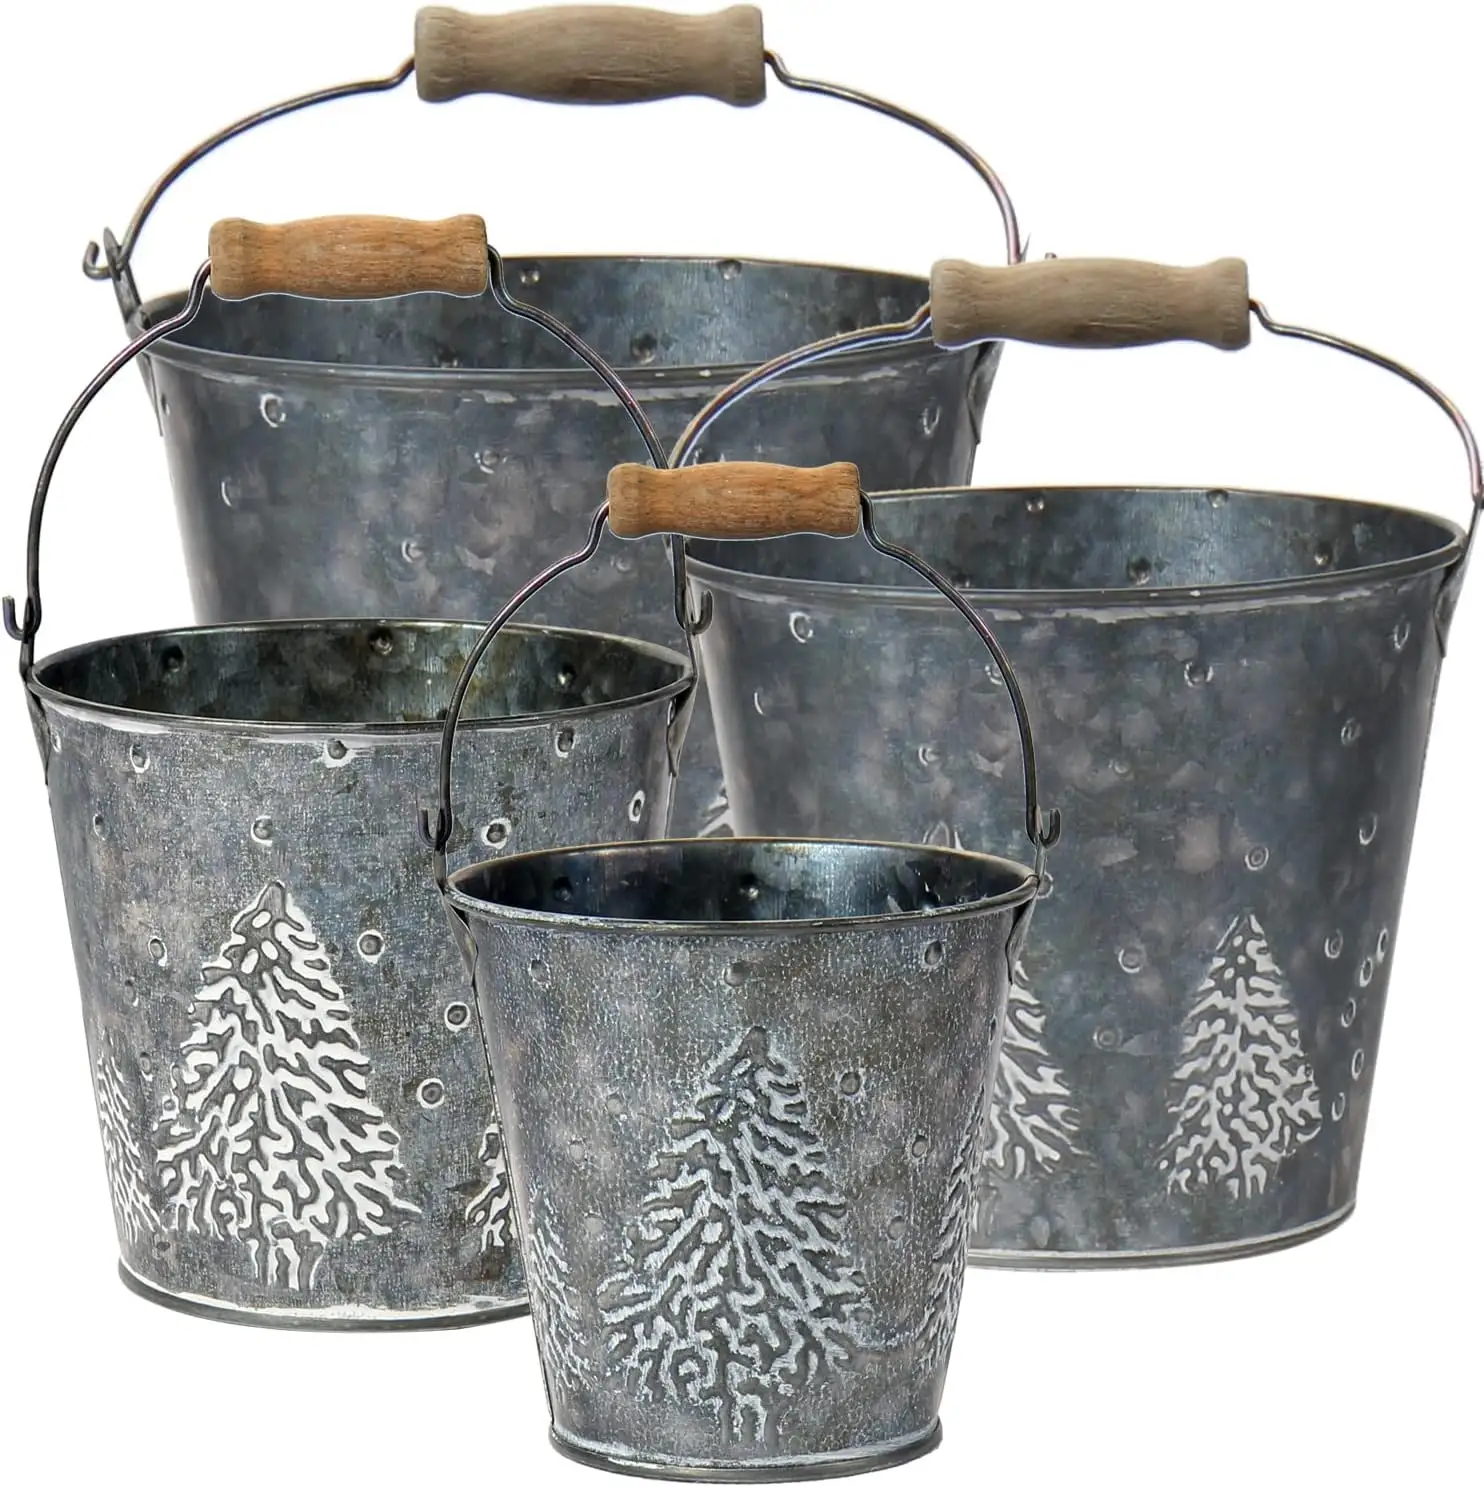 Hot sale garden products galvanized flower pot shape home decors New Design Metal Planter Wholesale Manufacturer Supplier